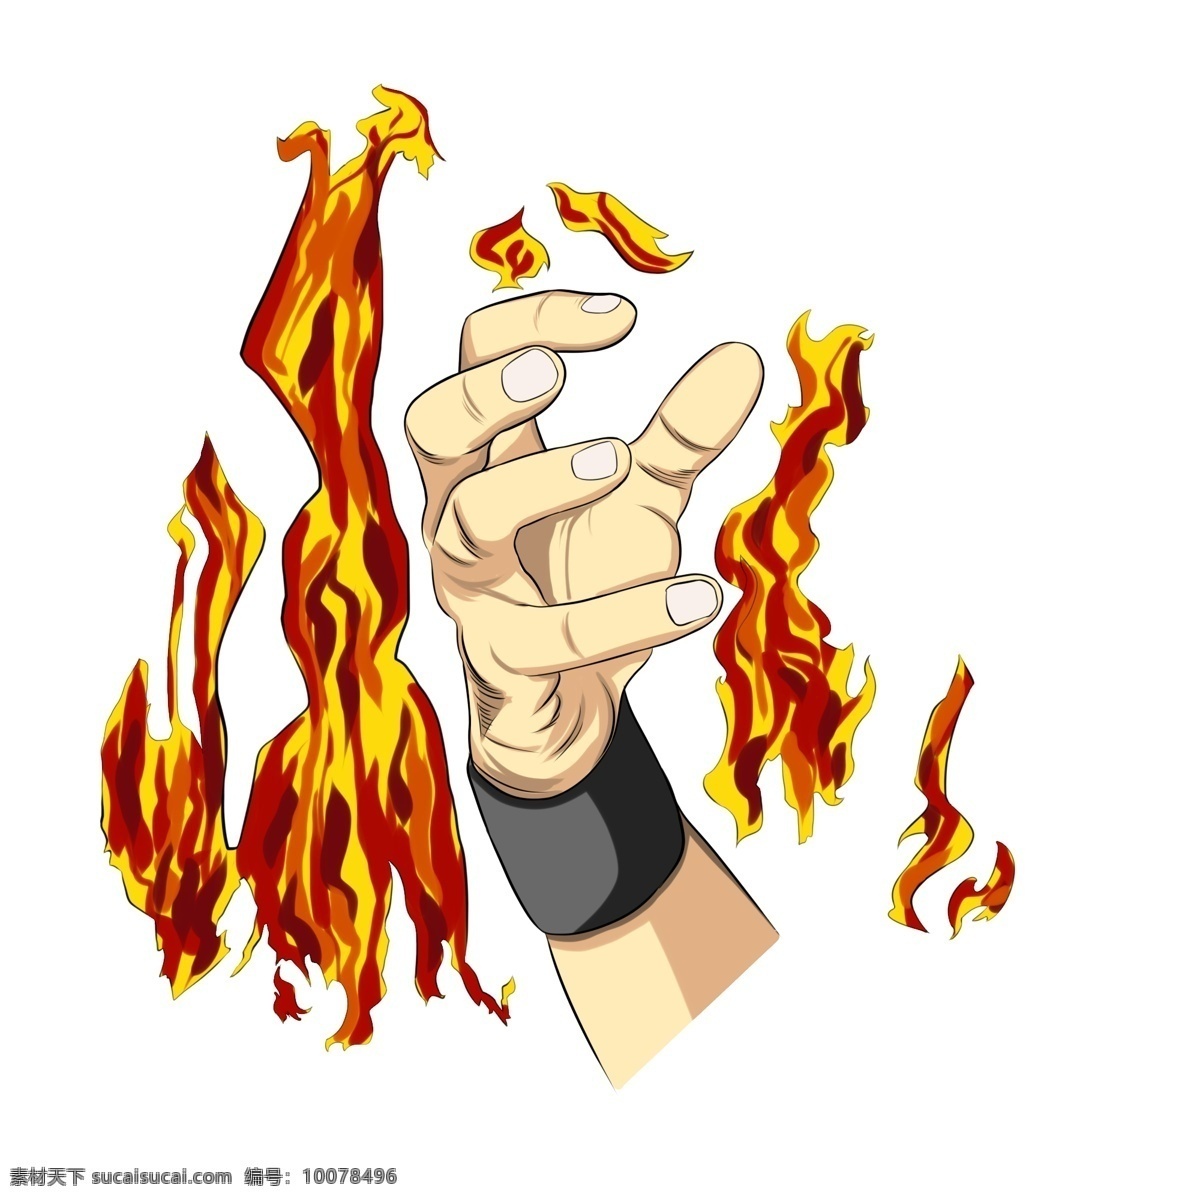 火焰 大 手势 插画 展开的手指 红色的火焰 卡通插画 手势插画 火焰插画 伸展的手势 黑色的腕脖